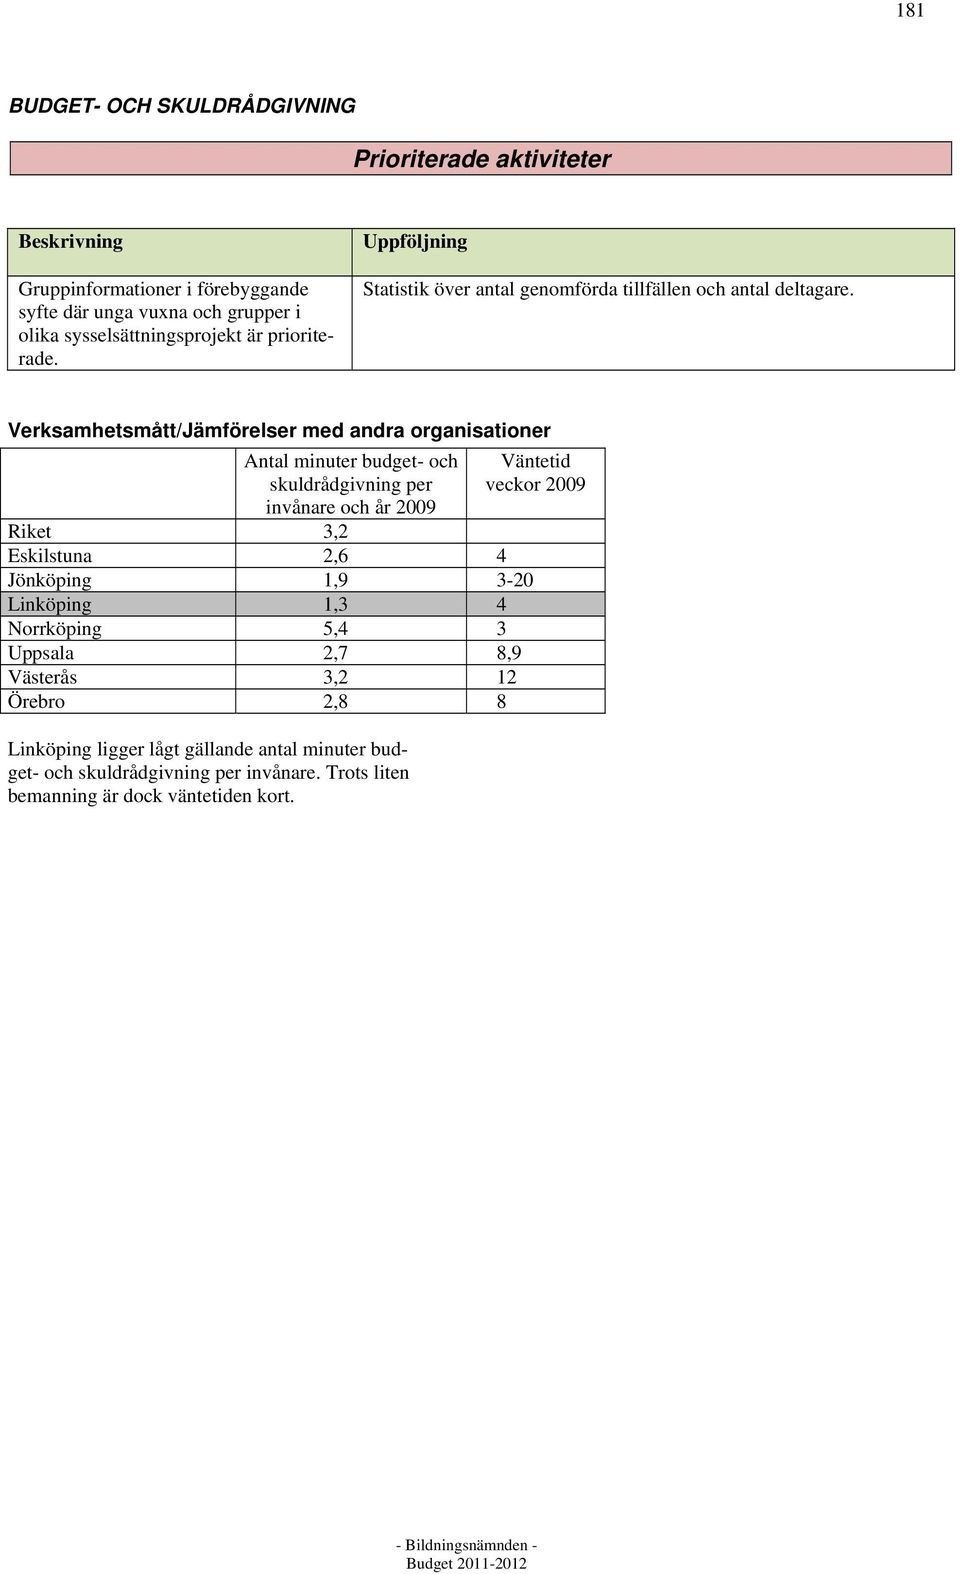 Verksamhetsmått/Jämförelser med andra organisationer Antal minuter budget- och skuldrådgivning per invånare och år 2009 Väntetid veckor 2009 Riket 3,2 Eskilstuna